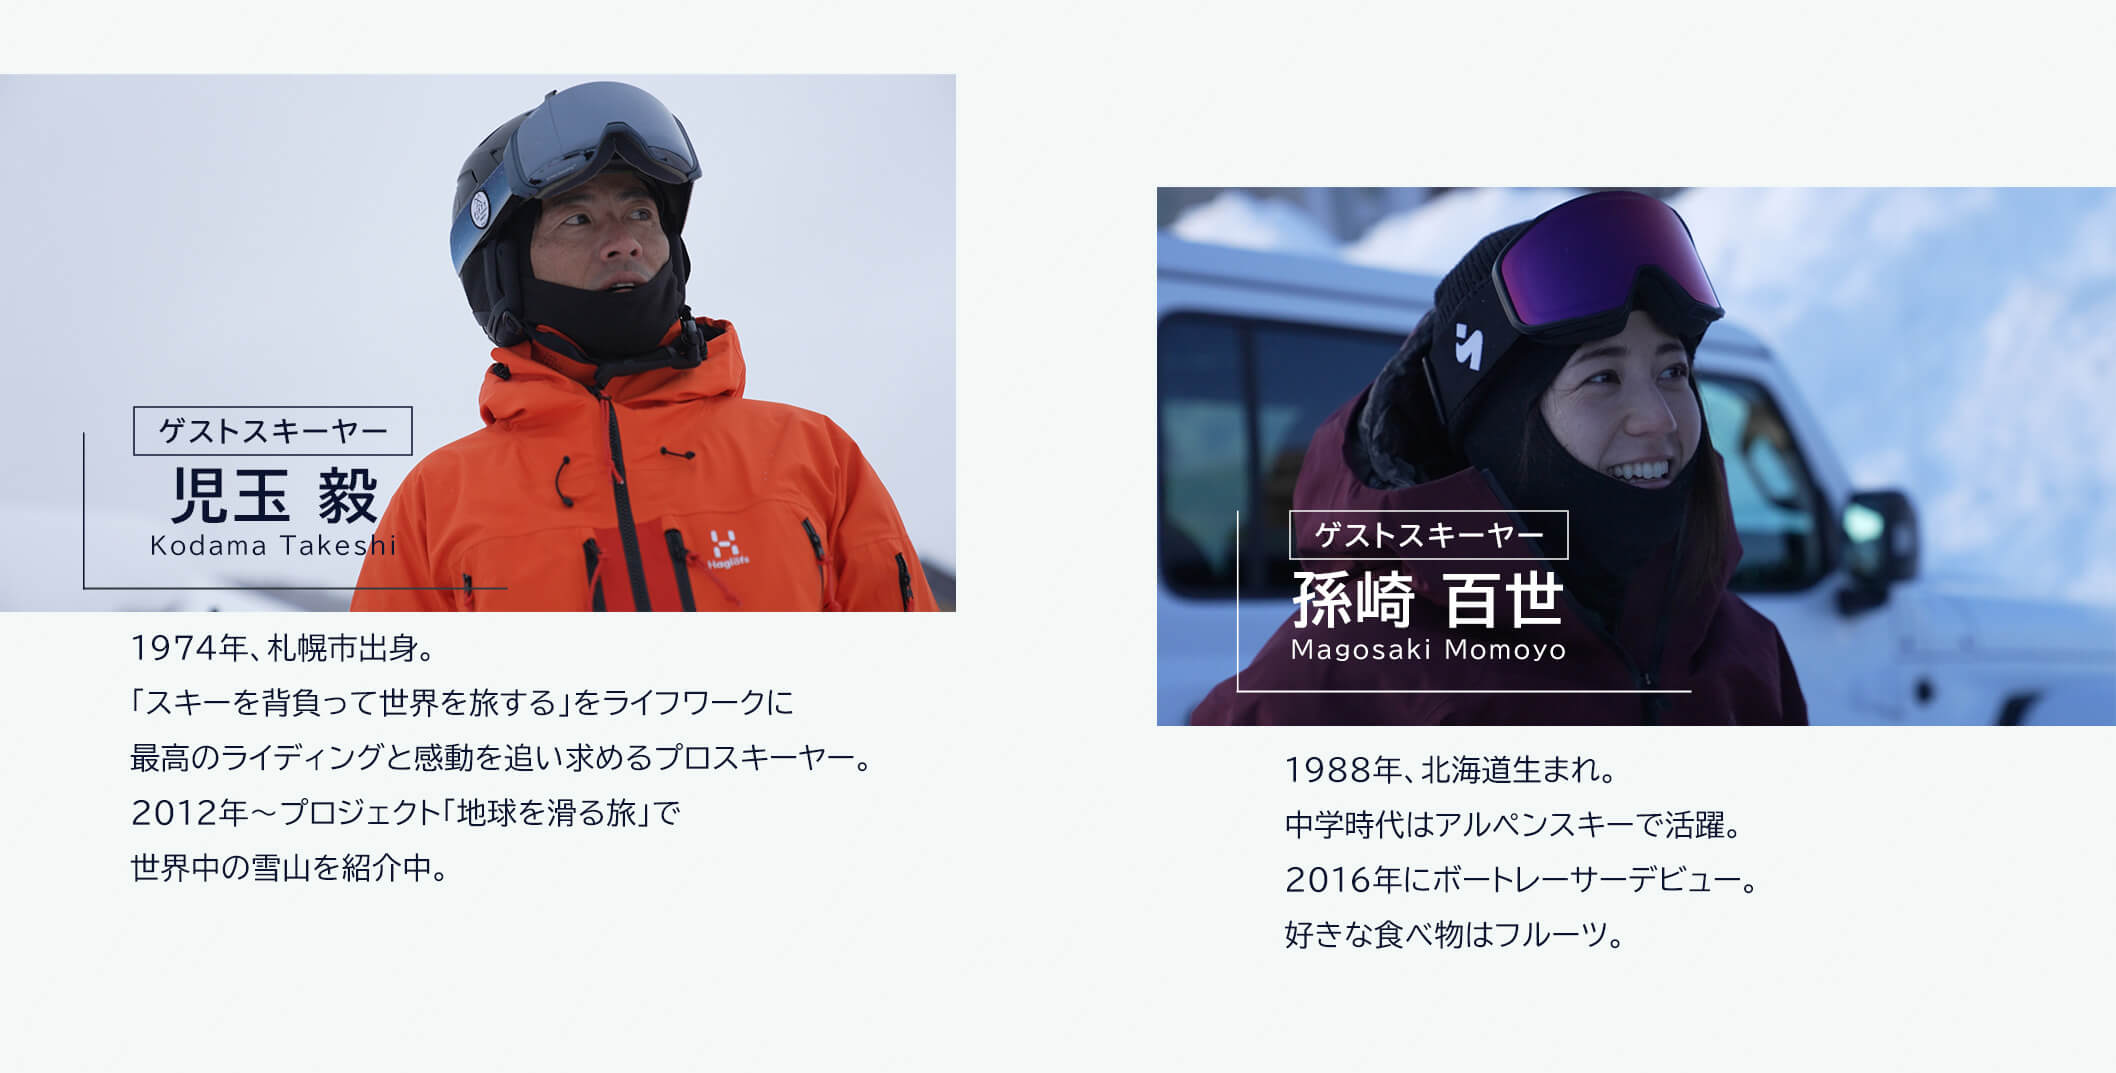 ゲストスキーヤー 児玉毅 Kodama Takeshi 1974 年、札幌市出身。「スキーを背負って世界を旅する」をライフワークに最高のライディングと感動を追い求めるプロスキーヤー。2012年～プロジェクト「地球を滑る旅」で世界中の雪山を紹介中。ゲストスキーヤー 孫崎百世 Magosaki Momoyo 1988年、北海道生まれ。中学時代はアルペンスキーで活躍。2016 年にボートレーサーデビュー。好きな食べ物はフルーツ。
